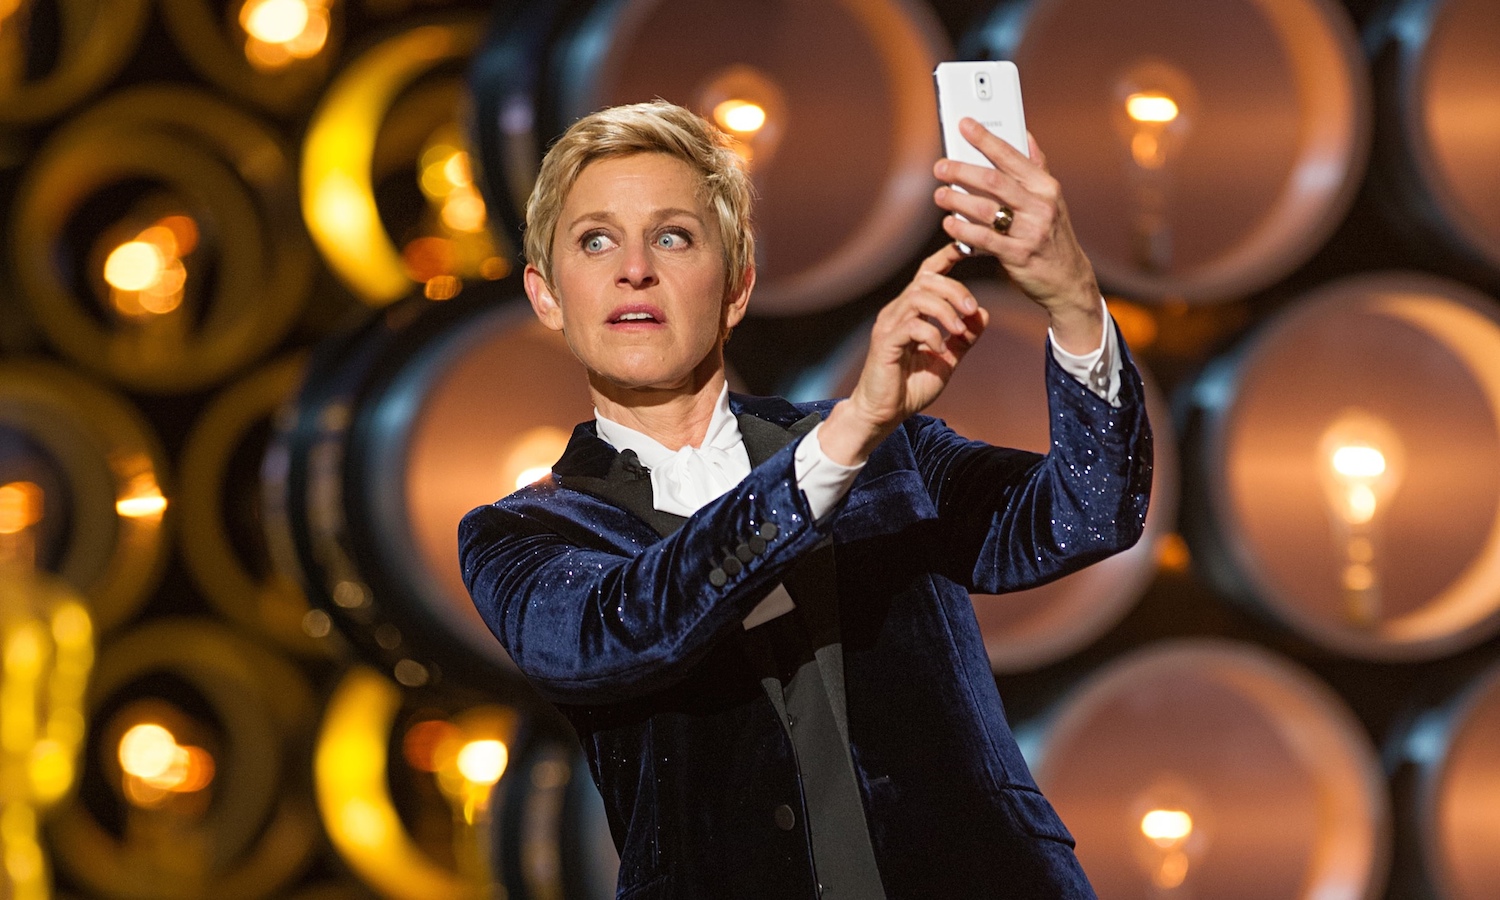 Lengua, Cámara y Acción: Was Ellen DeGeneres Schtick Brilliant Or Lousy On Oscar Night?